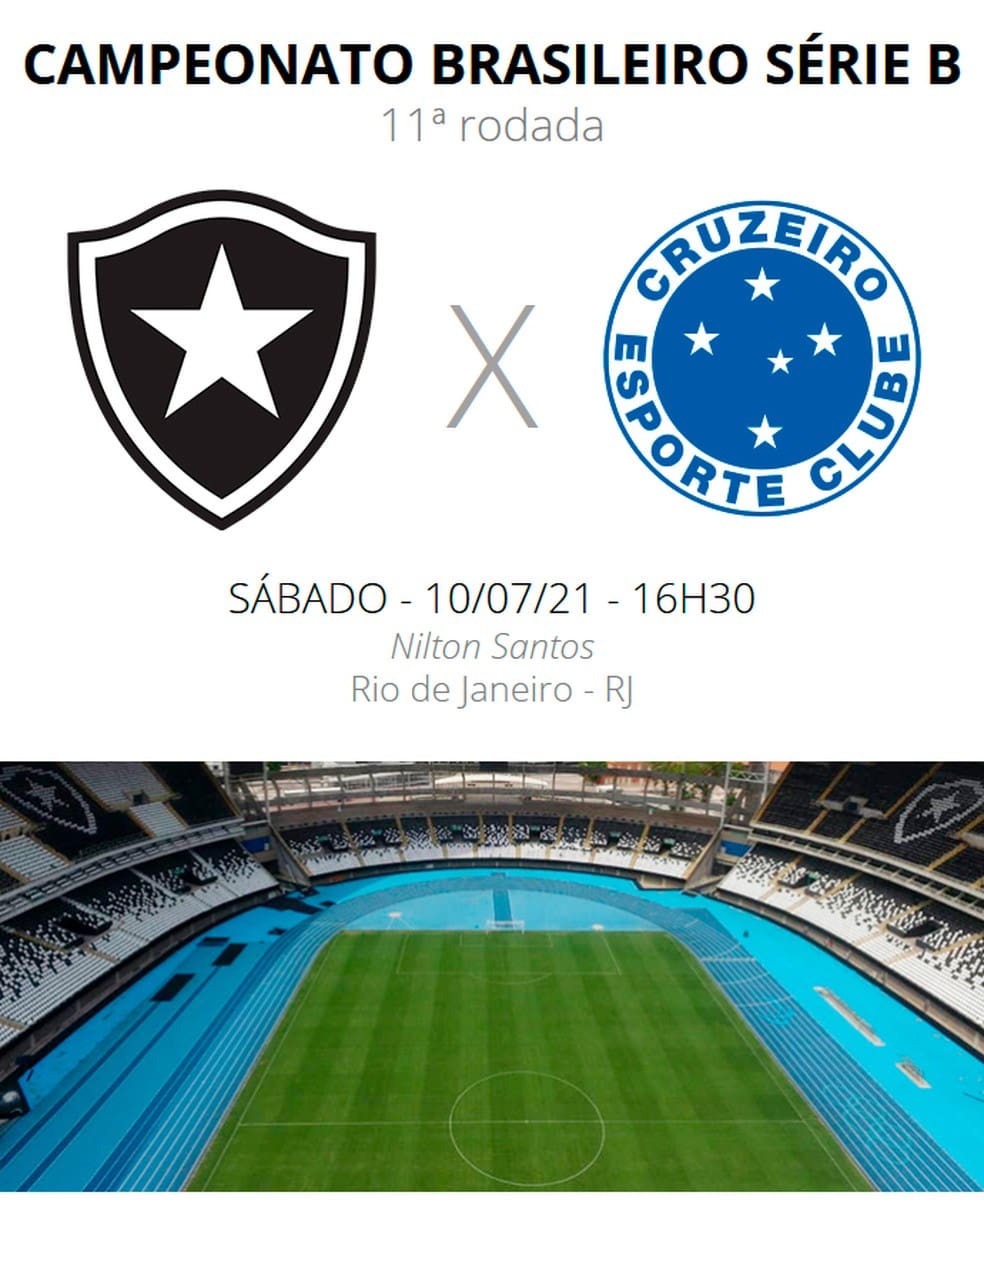 Duelo de gigantes na série B: Botafogo x Cruzeiro. A Minas FM transmite.